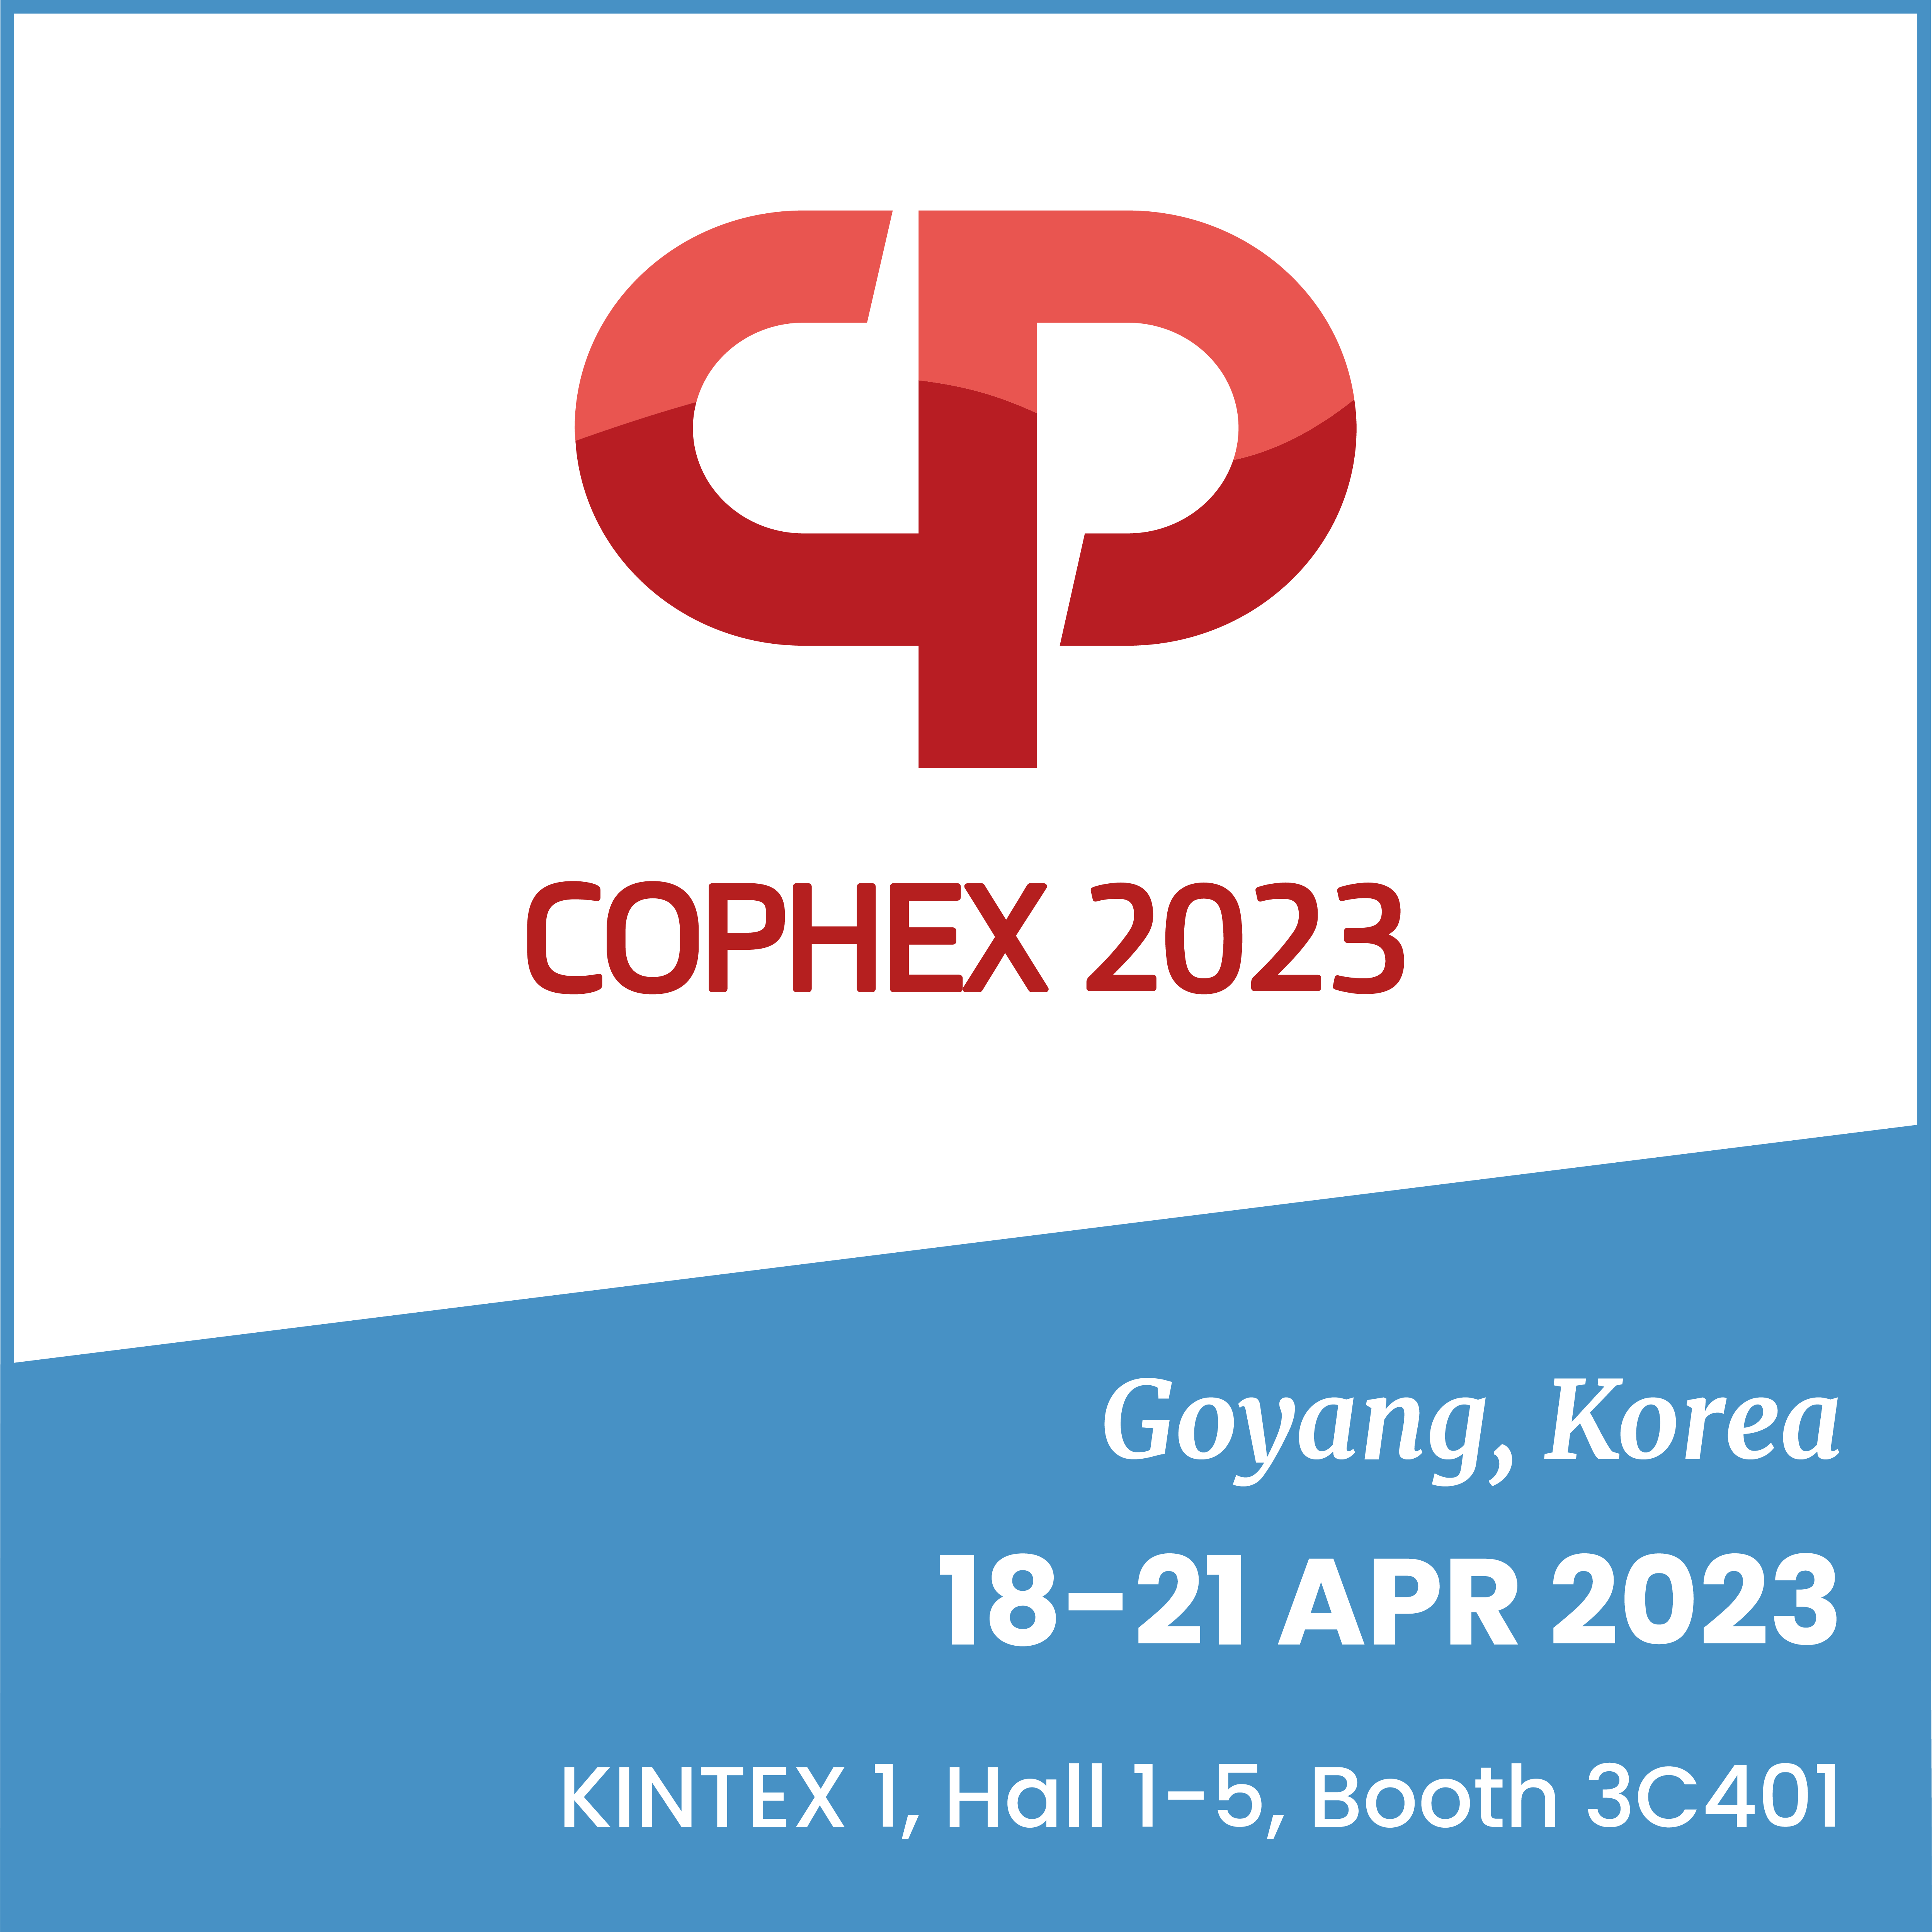 Cophex 2023, 18-21 APR 23, Goyang